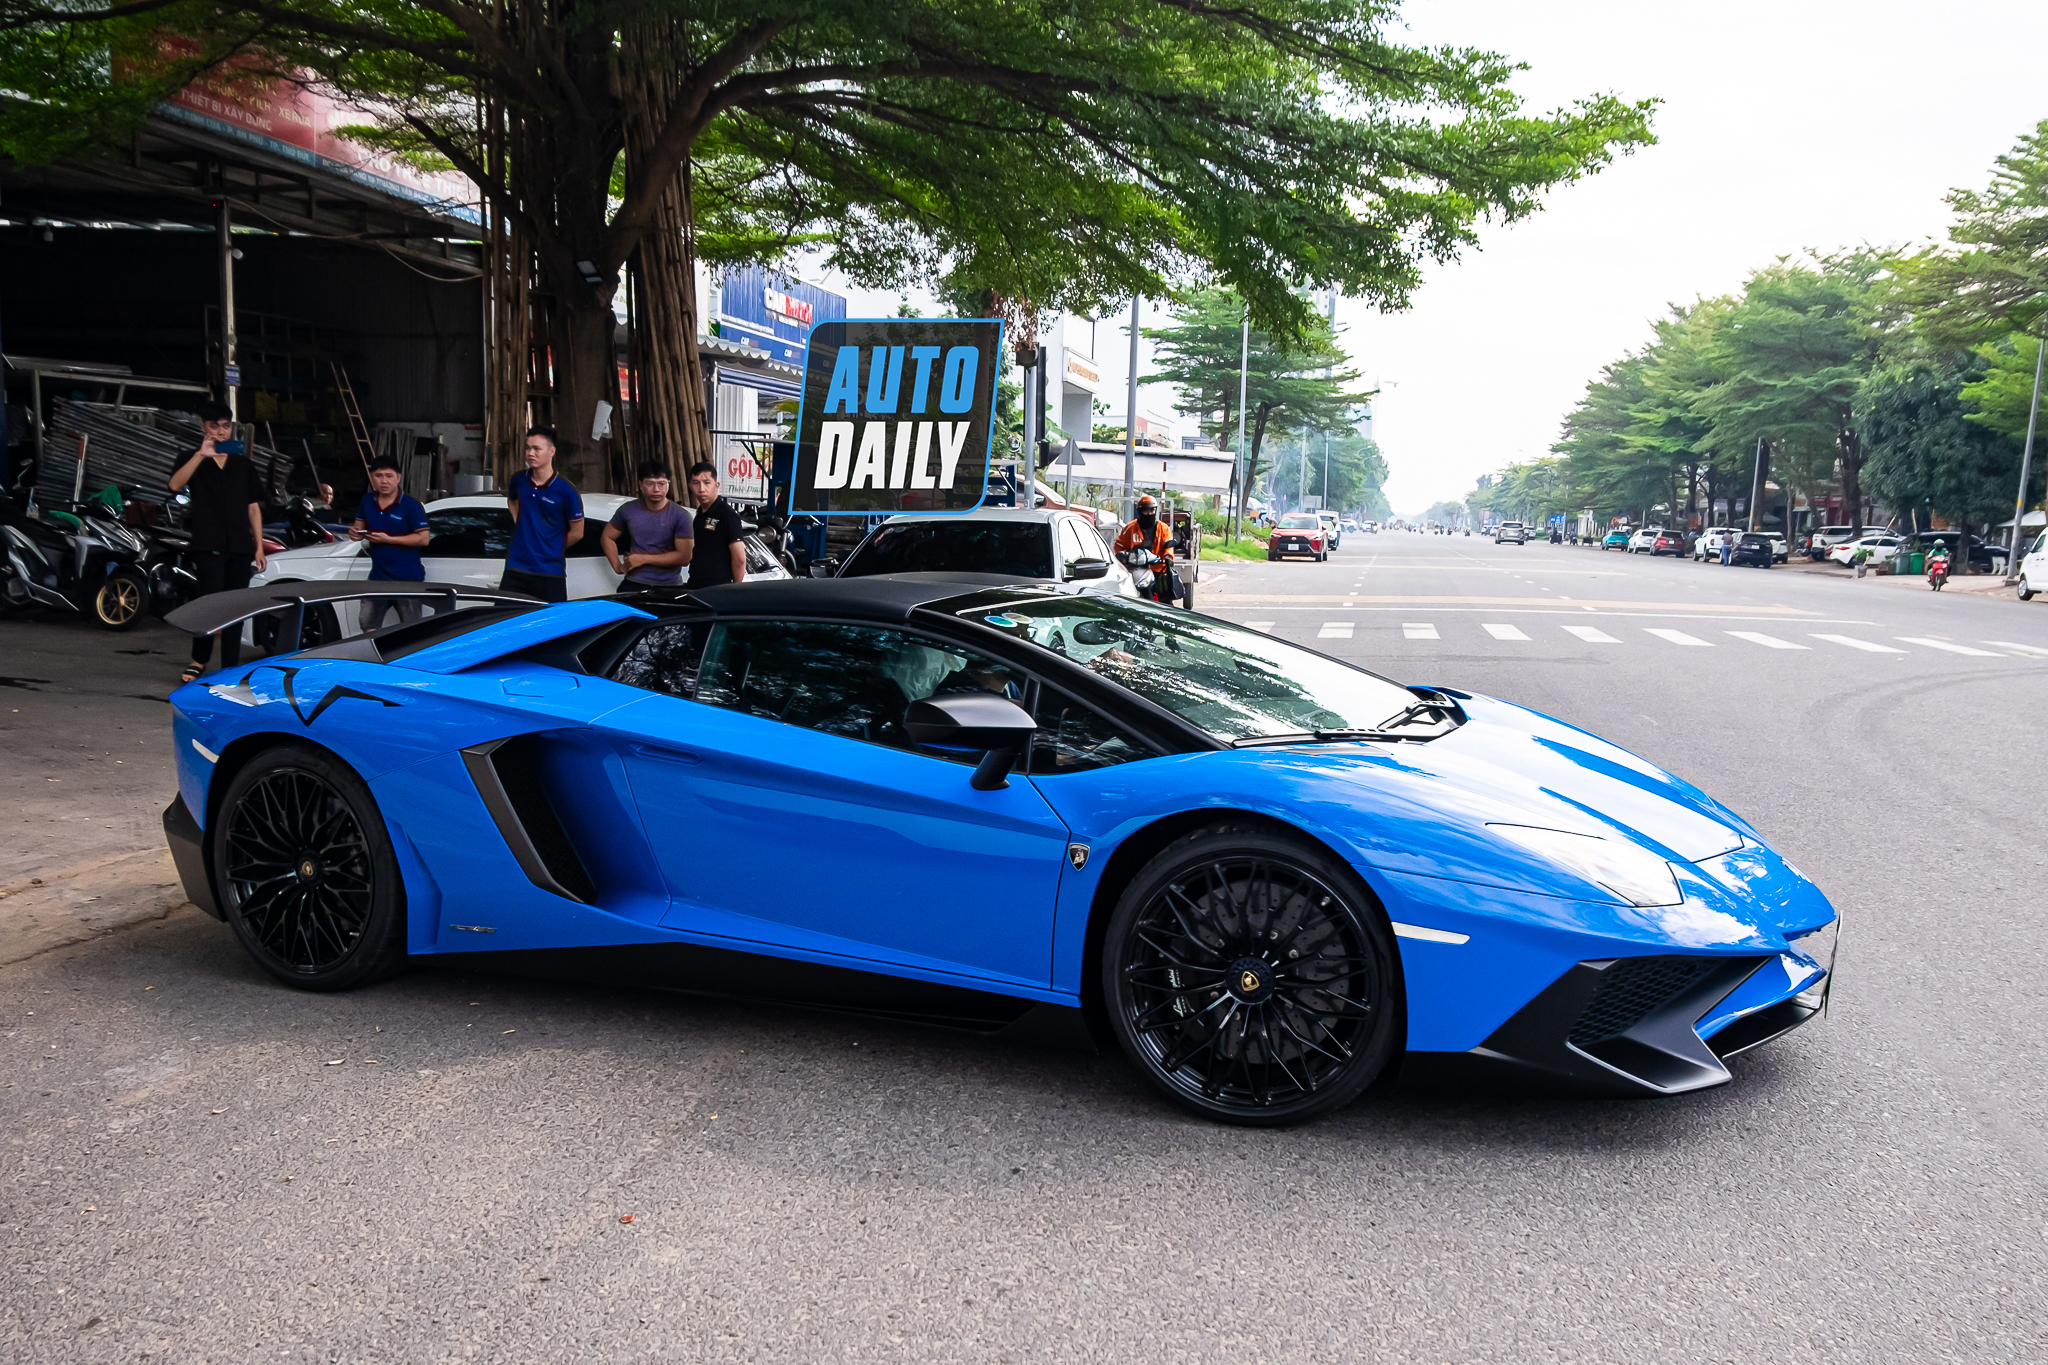 Bắt gặp Lamborghini Aventador SV Roadster màu xanh độc nhất Việt Nam aventador-sv-roadster-xanh-autodaily-9.JPG